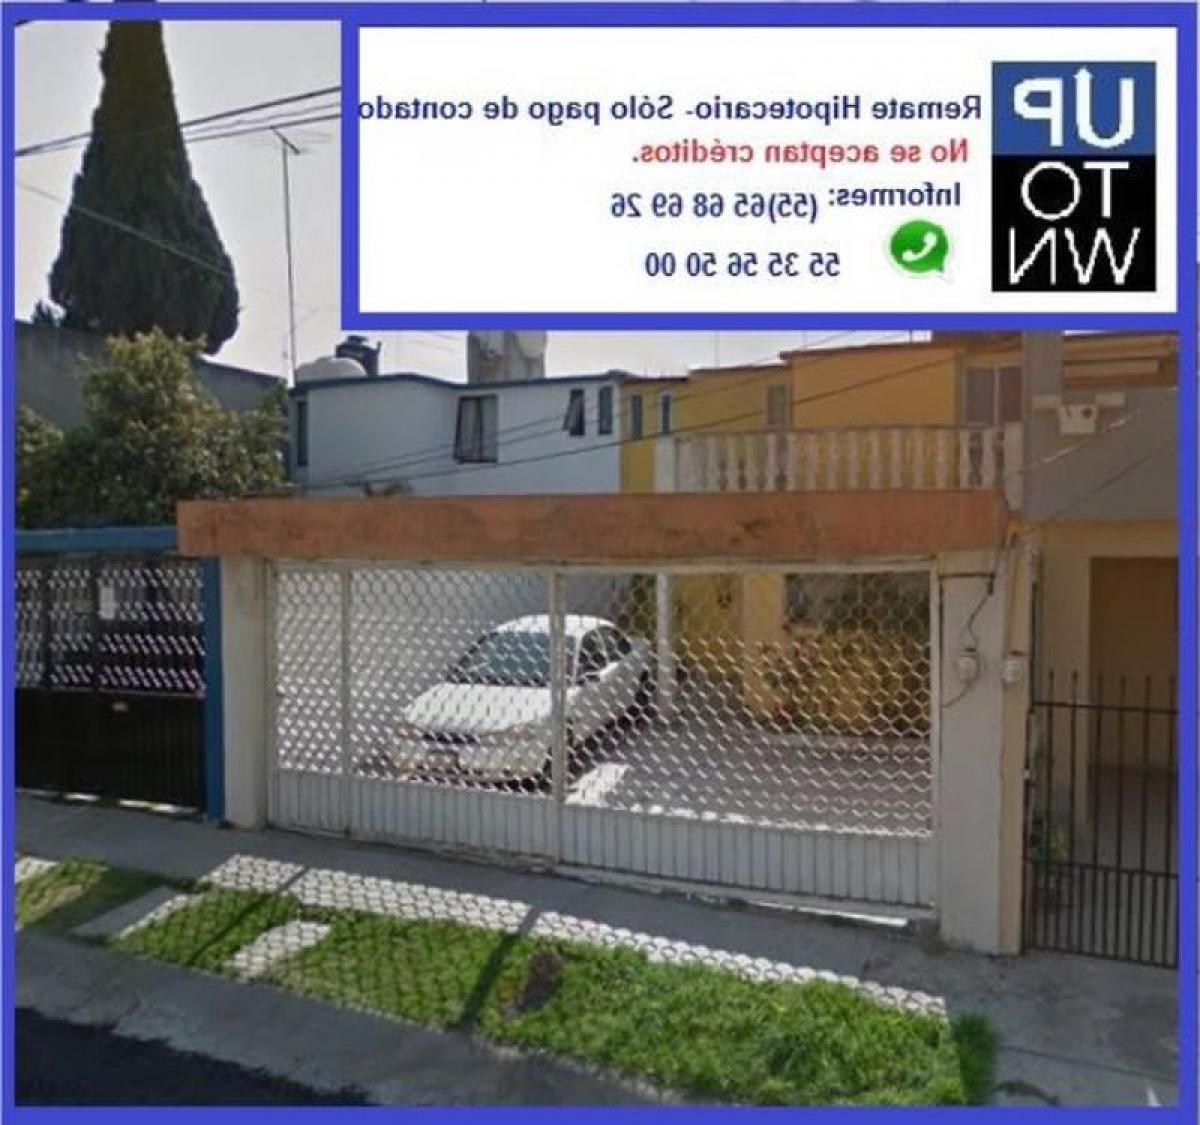 Picture of Home For Sale in Cuautitlan Izcalli, Mexico, Mexico